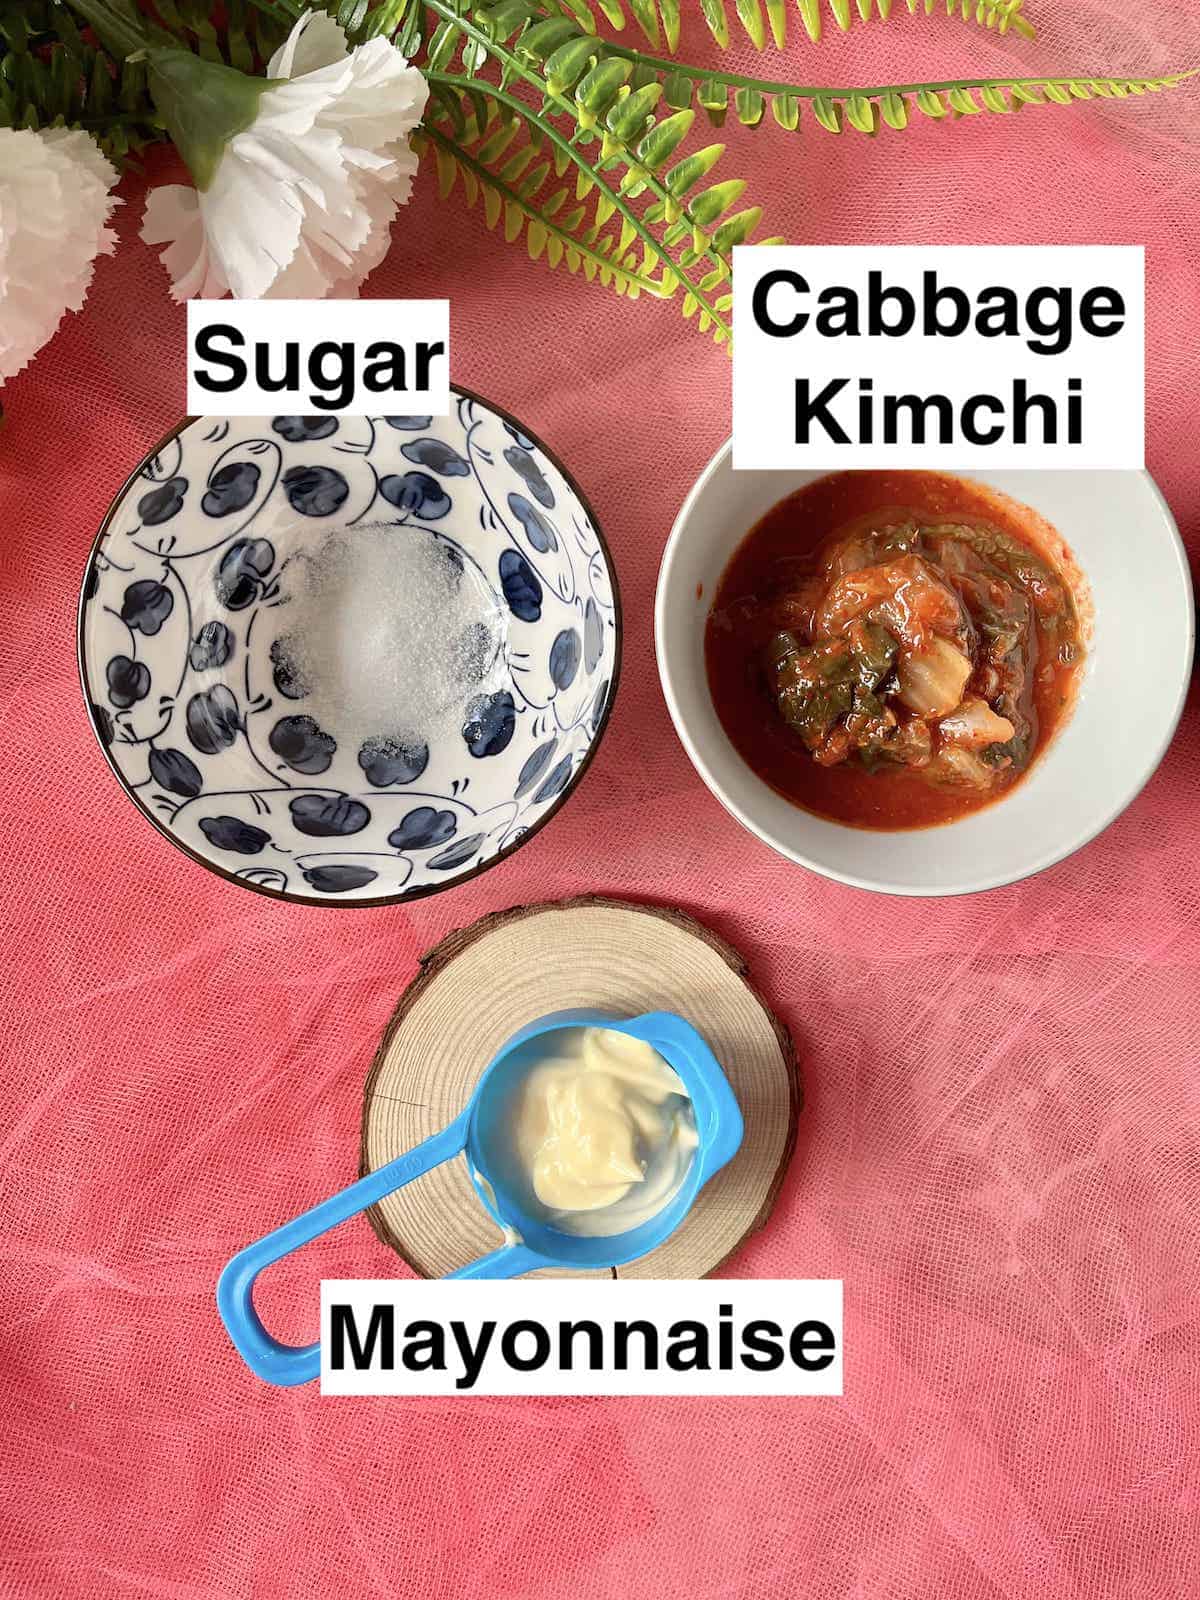 White sugar next to Korean kimchi and Mayonnaise.